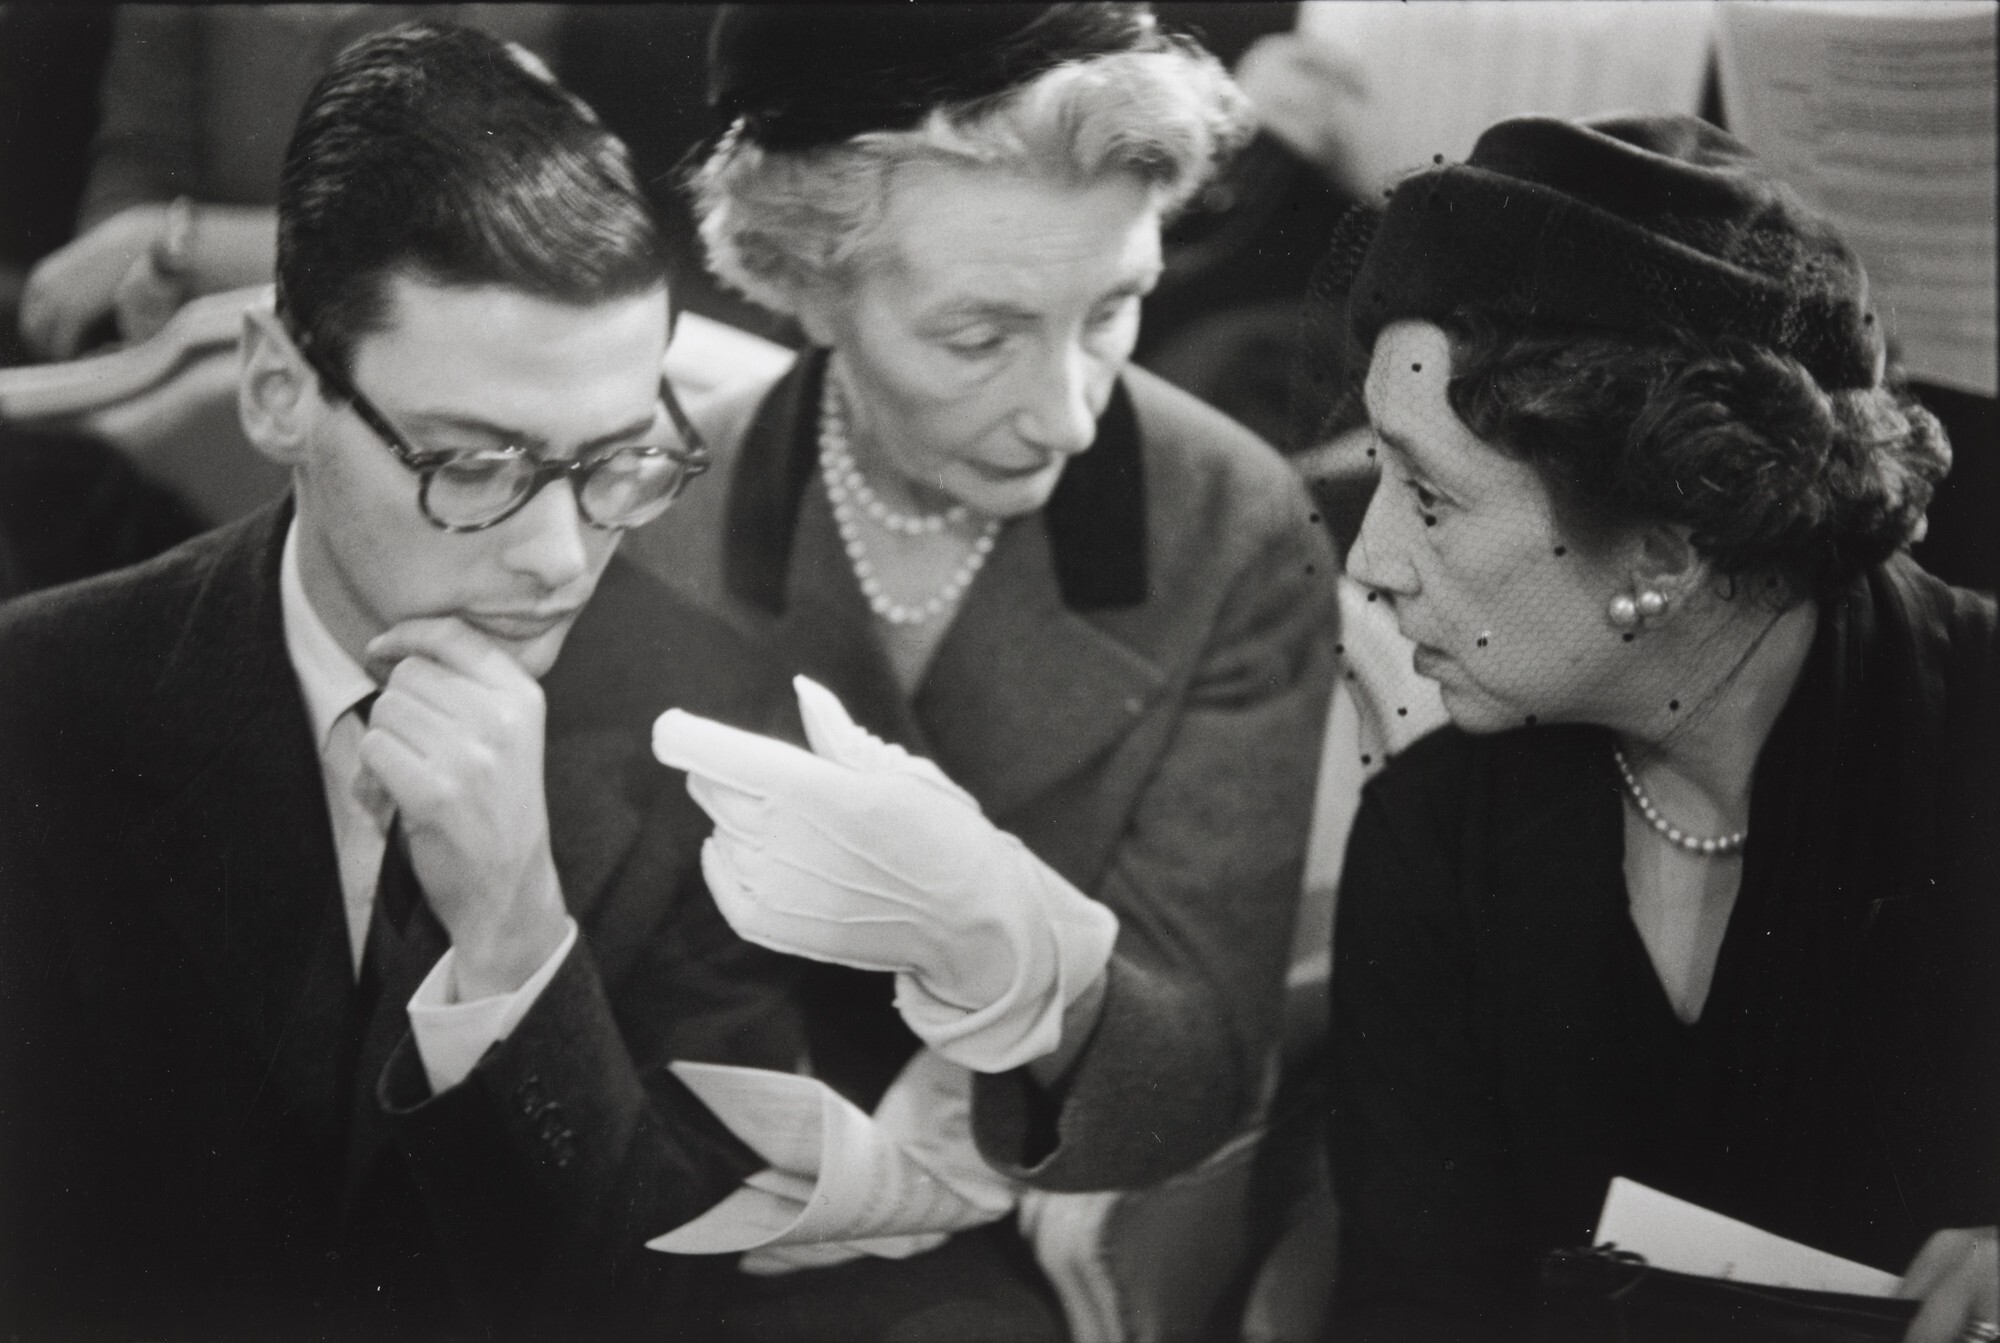 Ричард Аведон, Кармел Сноу и Мари-Луиза Буске, Париж, 1951. Фотограф Анри Картье-Брессон